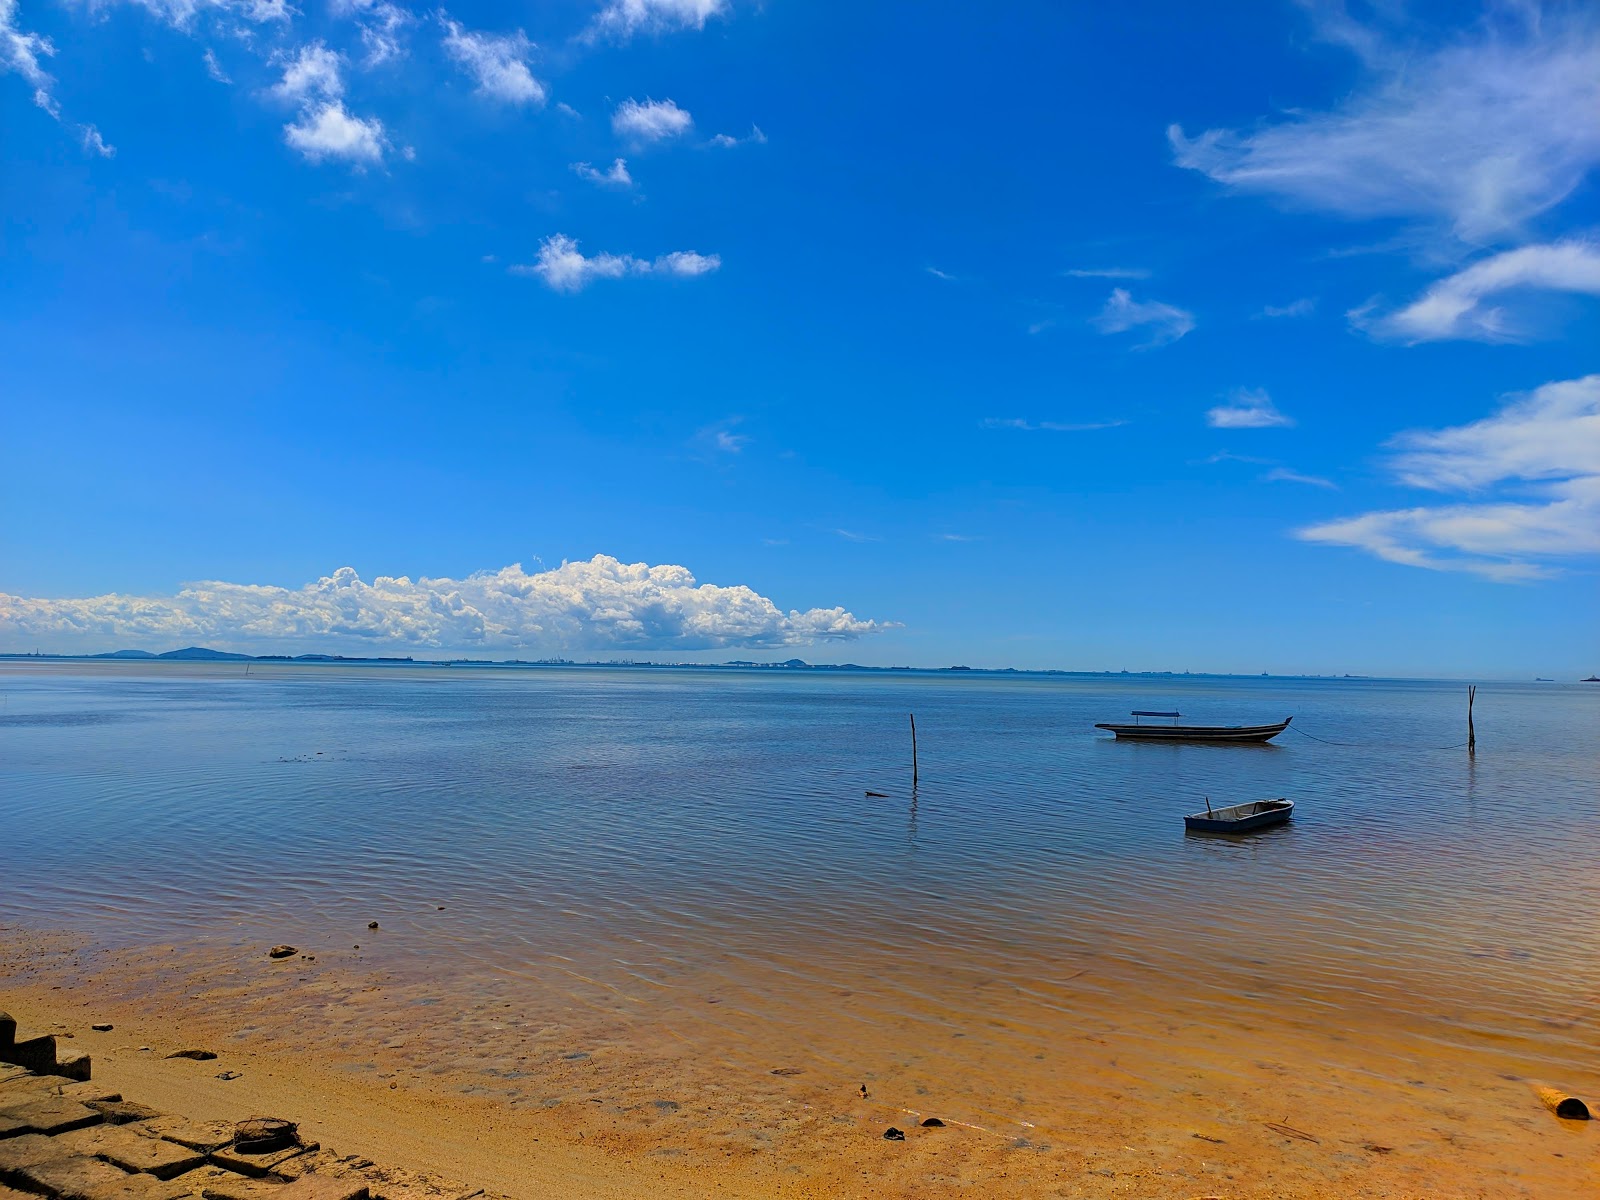 Pantai Tj. Bemban'in fotoğrafı turkuaz su yüzey ile